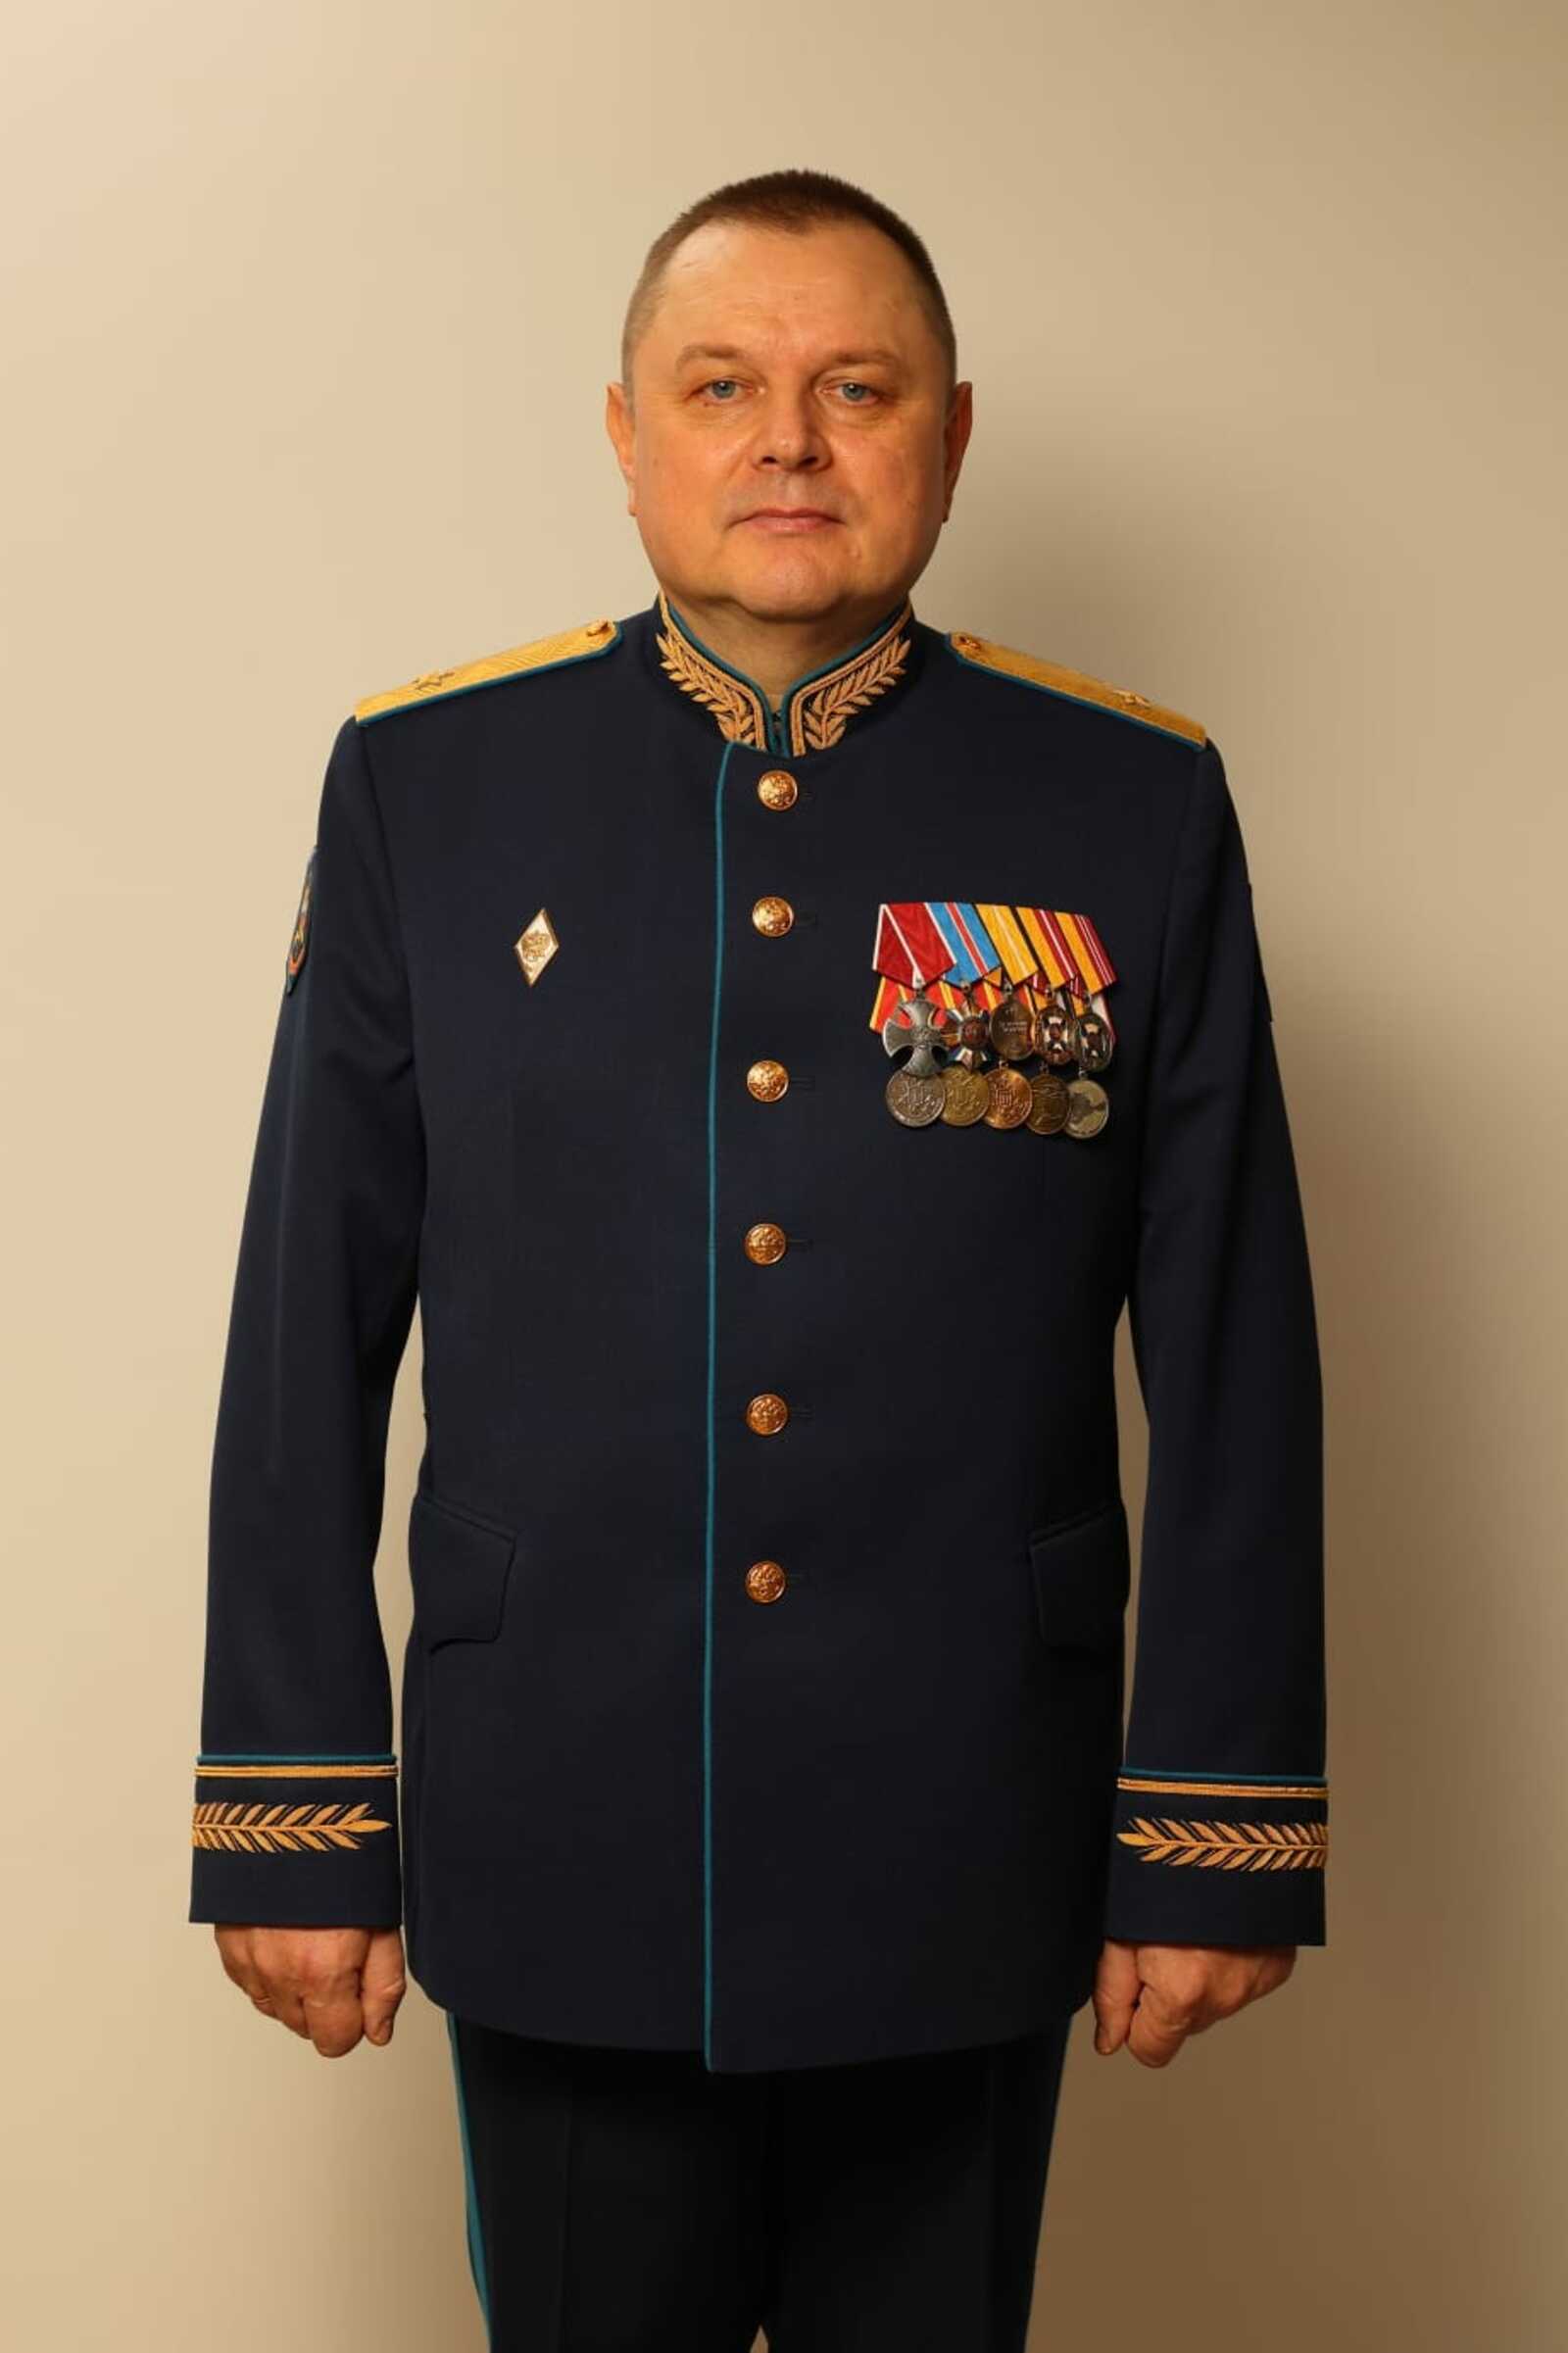 Понятия «честь», «долг» и «Родина» для Генерала-майора Андрея Рыцева превыше всего